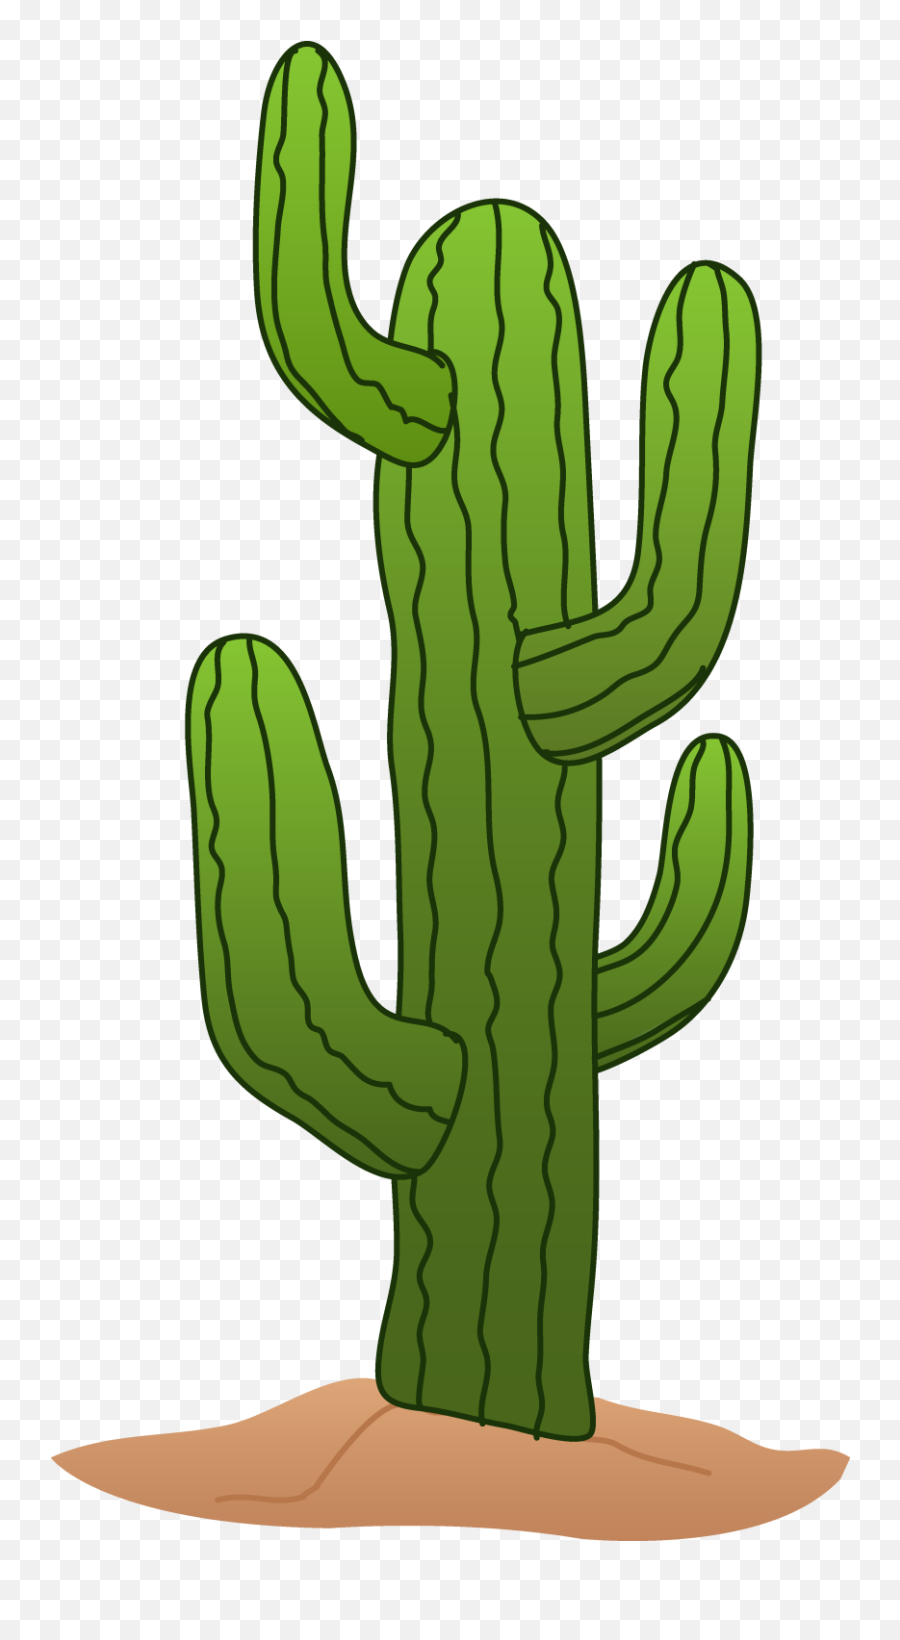 Emoji Clipart Cactus Emoji Cactus Transparent Free For - Transparent Background Cactus Clip Art,Cactus Emoji